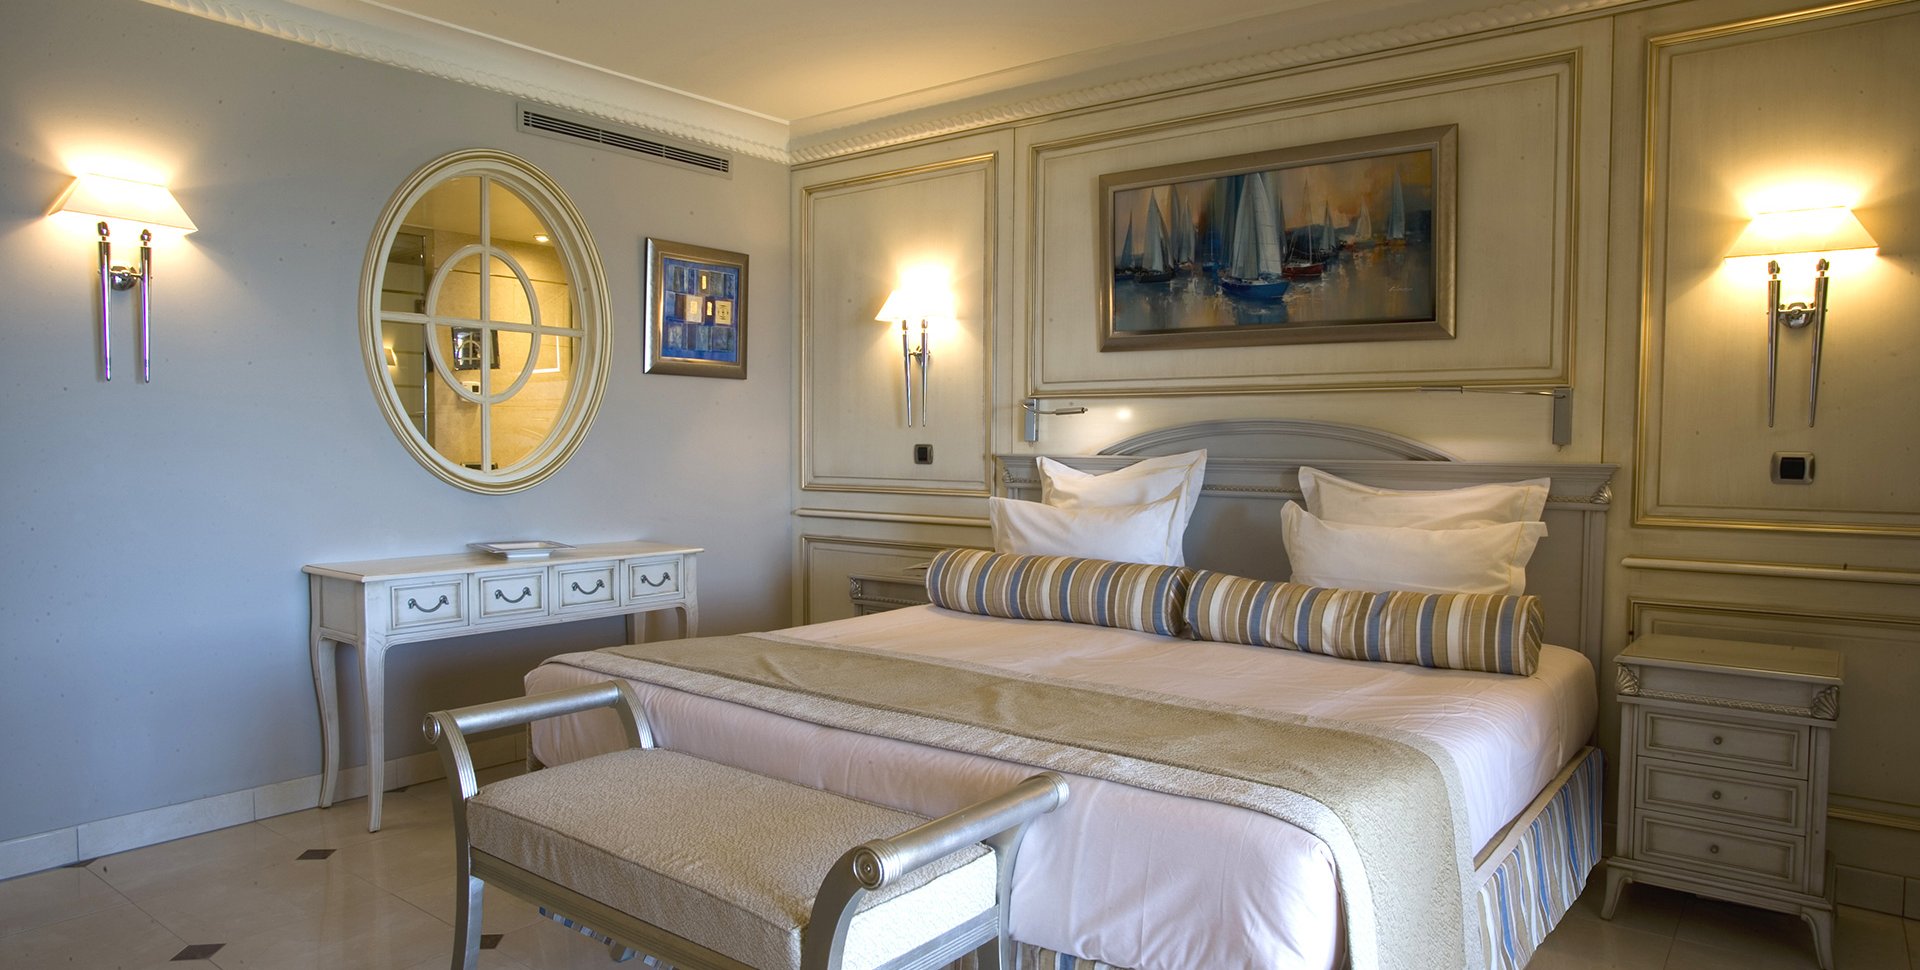 Bedroom for Club de Cavalière Hôtel & Spa 5* by Borella Art Design